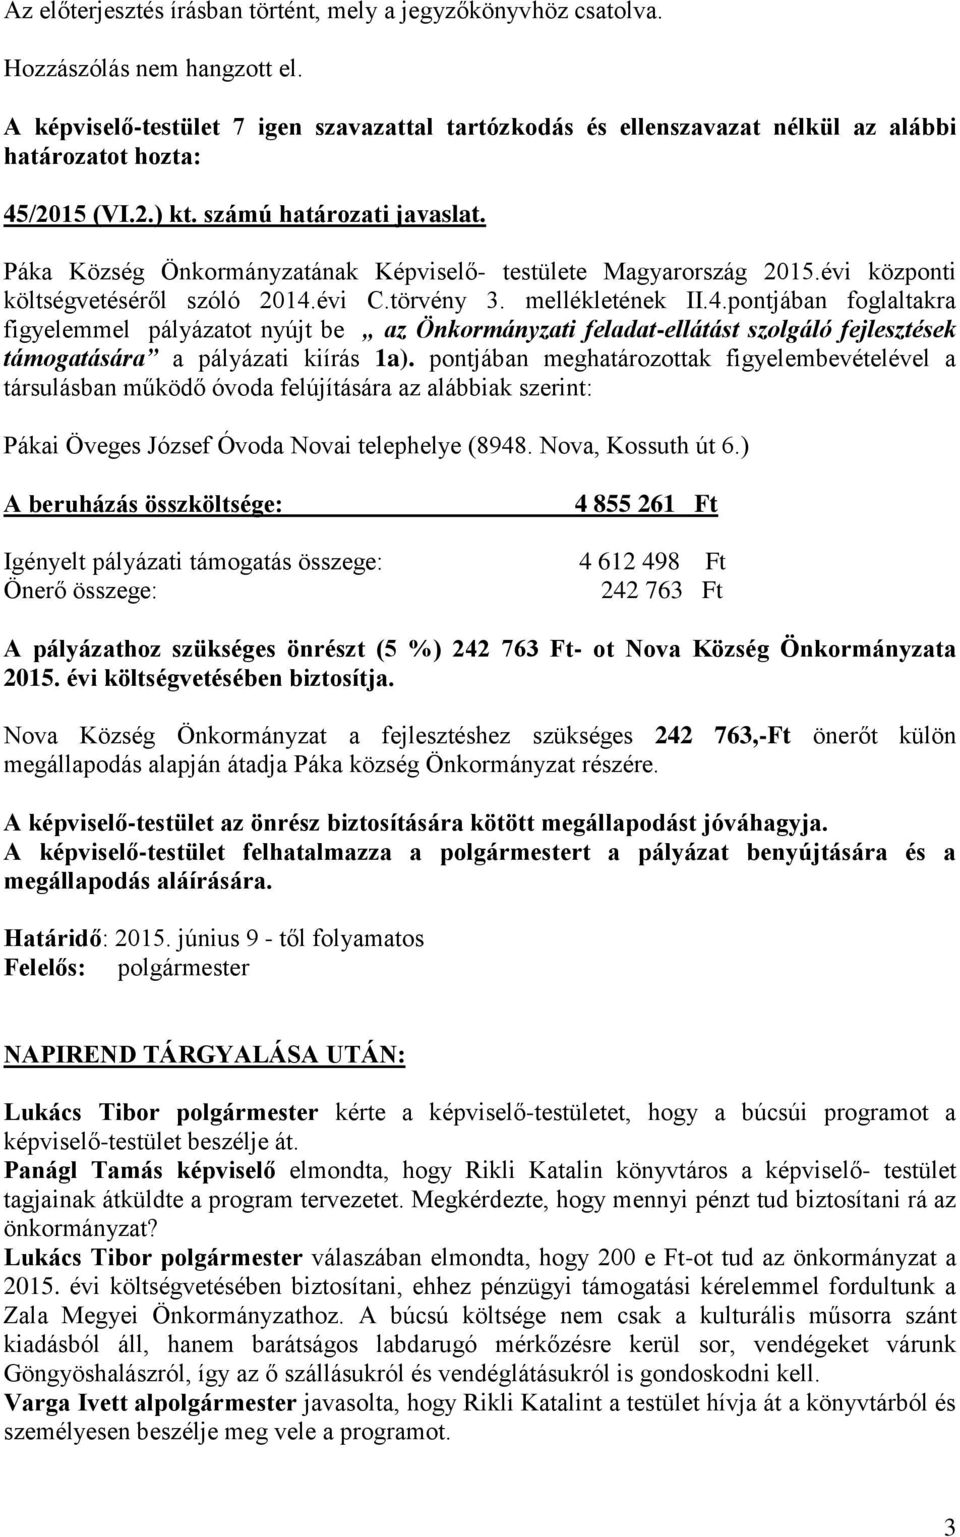 Páka Község Önkormányzatának Képviselő- testülete Magyarország 2015.évi központi költségvetéséről szóló 2014.